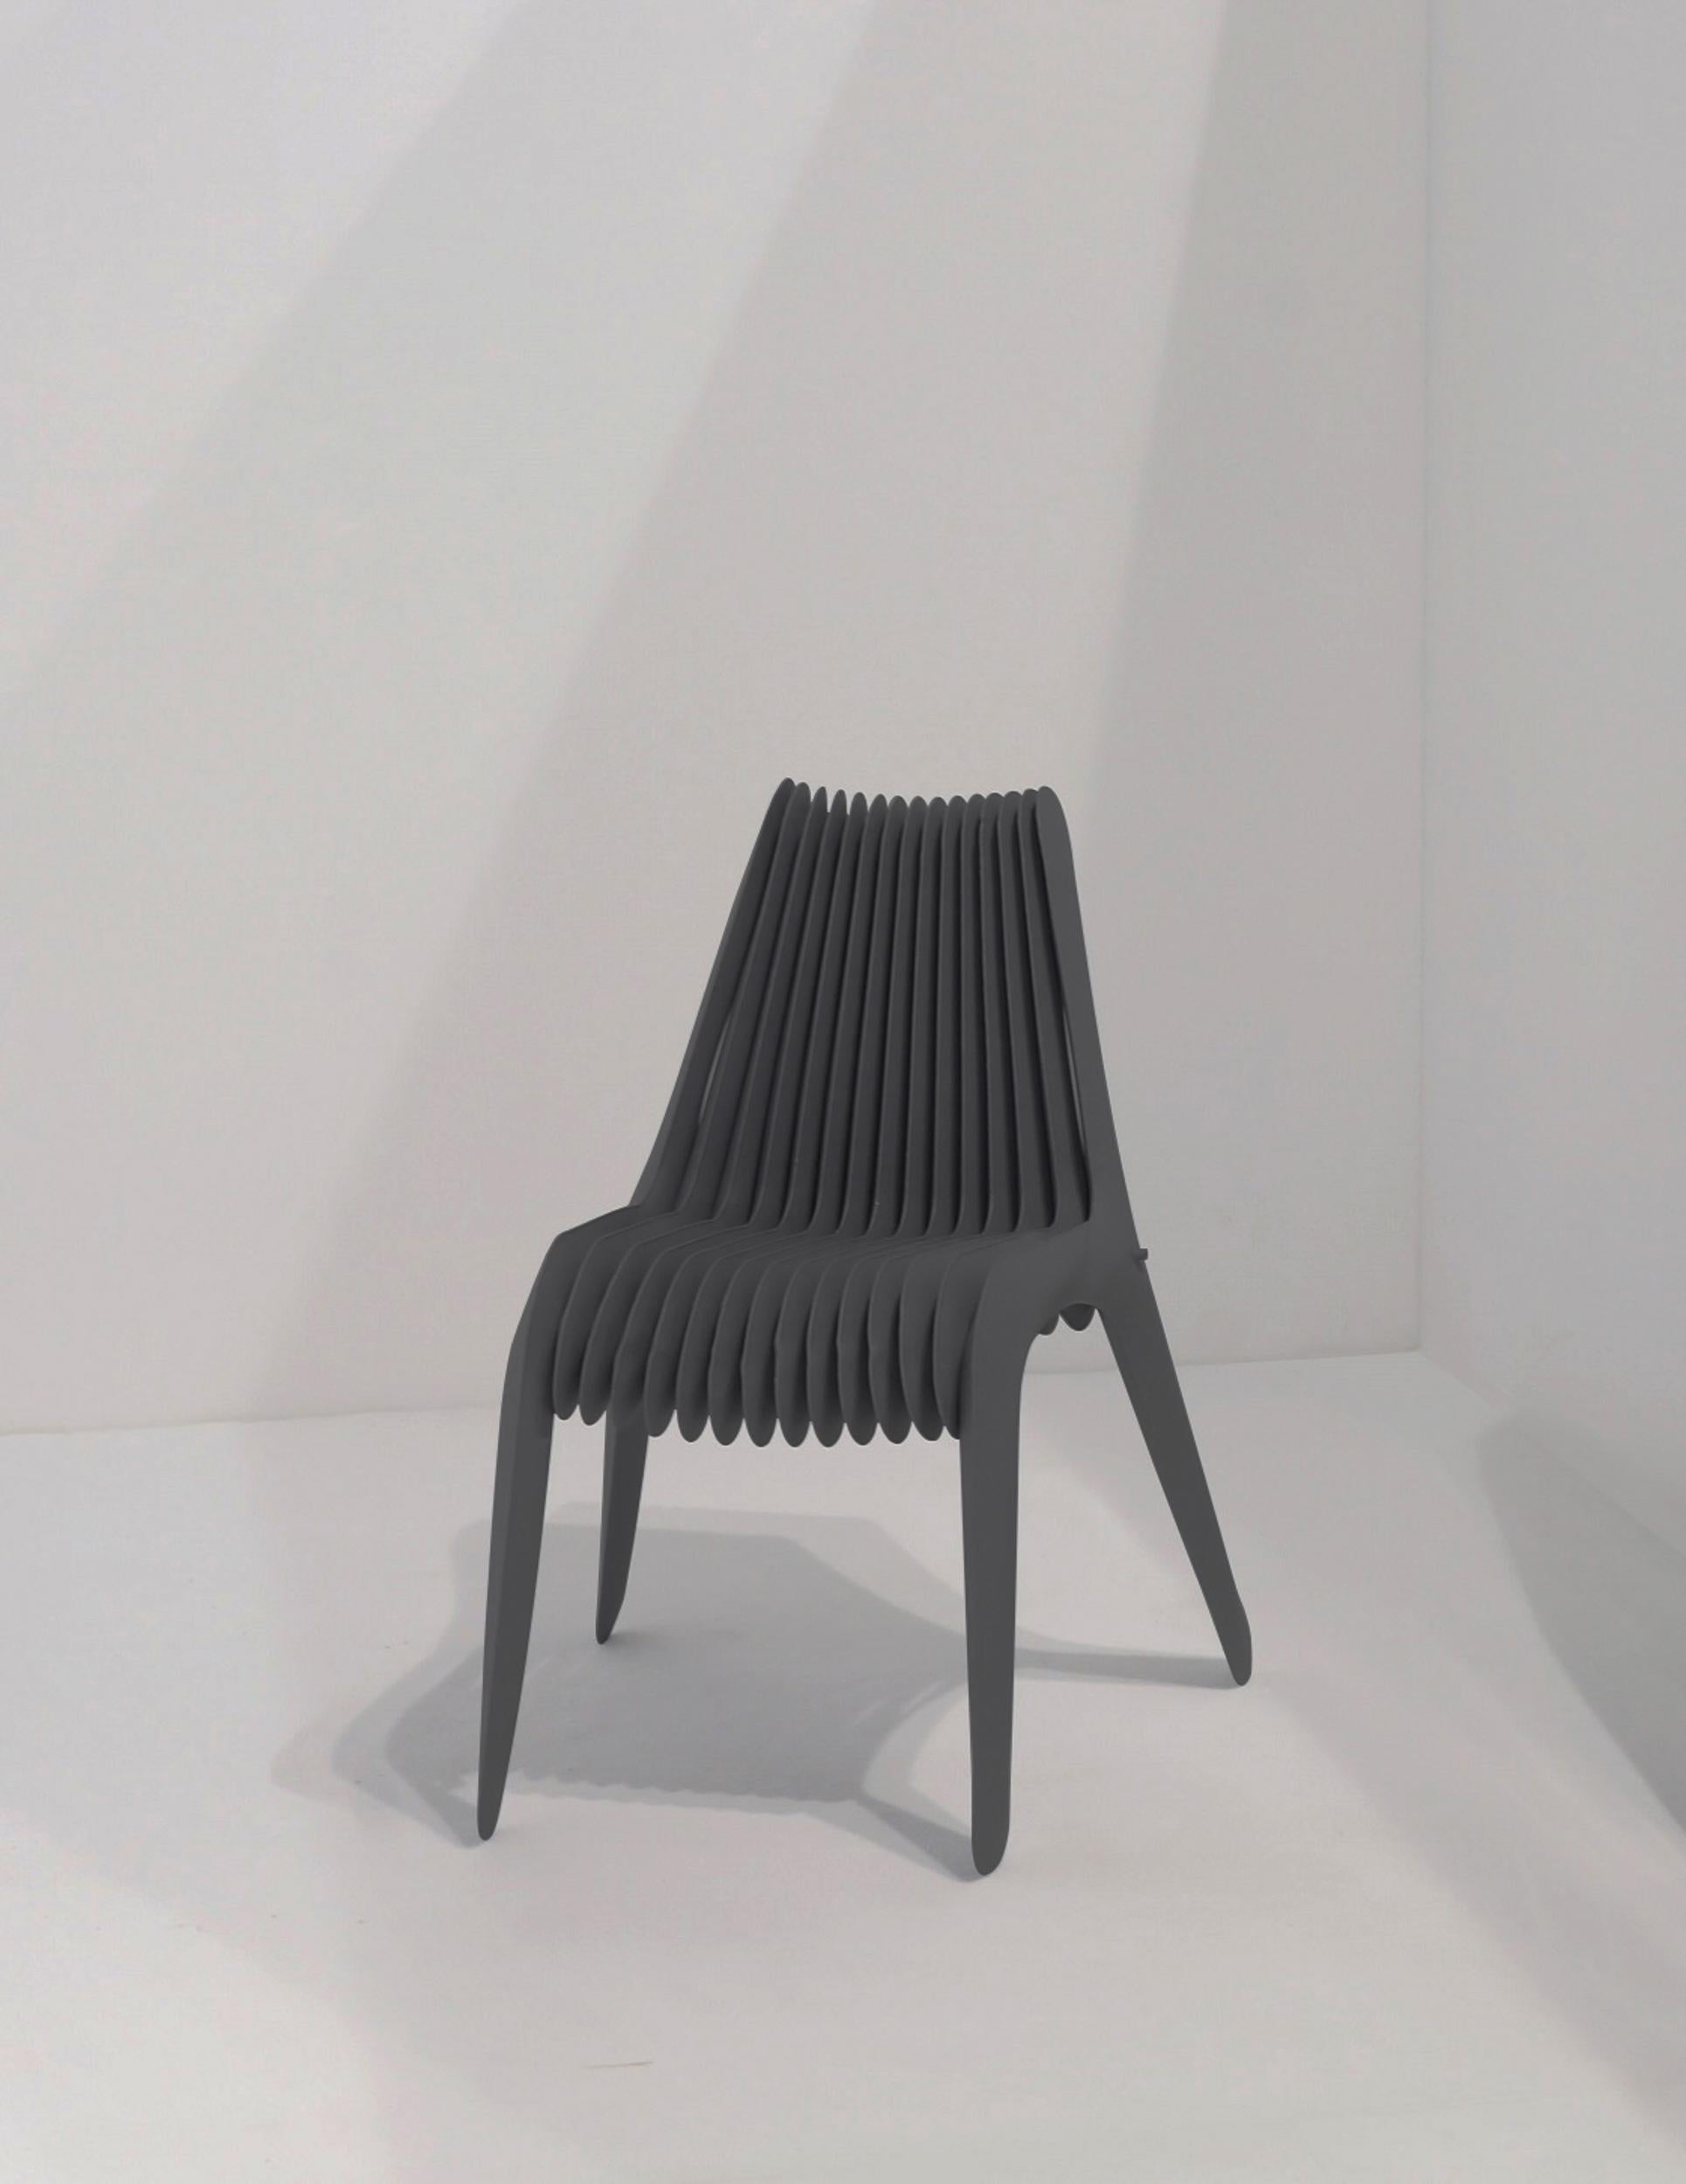 Steel In Rotation Stuhl von Zieta, rostfreier Stahl (inox)

Maße: 80 x 45 x 60 cm.

SIR NO. 3 CHAIR ist ein konzeptioneller Dialog zwischen Design und Kunst. Wie viele der Objekte von Oskar Zięta erweitern auch die SIR-Stühle die Grenzen zwischen